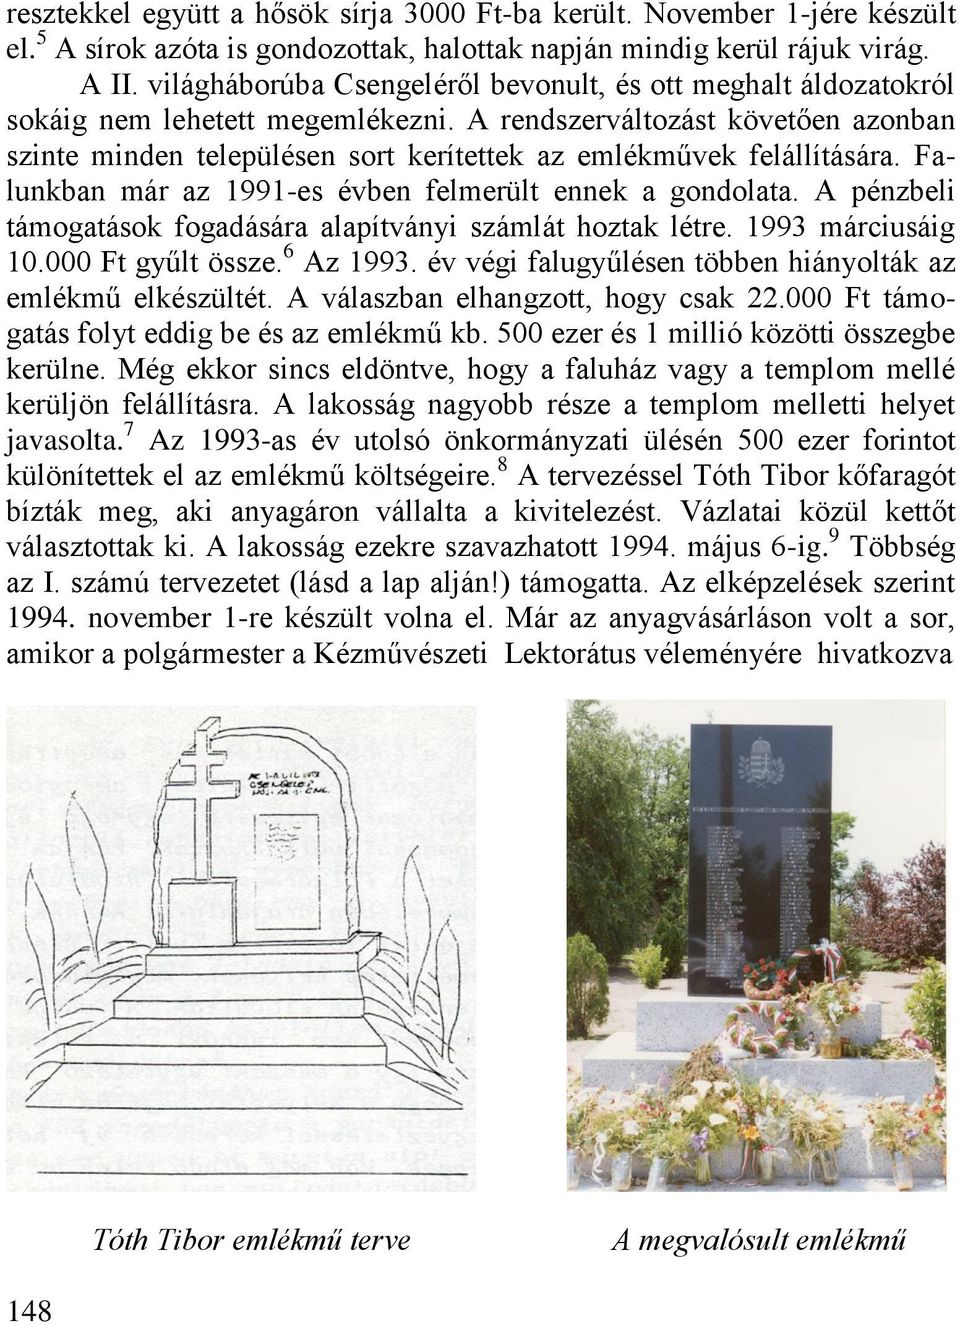 A rendszerváltozást követően azonban szinte minden településen sort kerítettek az emlékművek felállítására. Falunkban már az 1991-es évben felmerült ennek a gondolata.